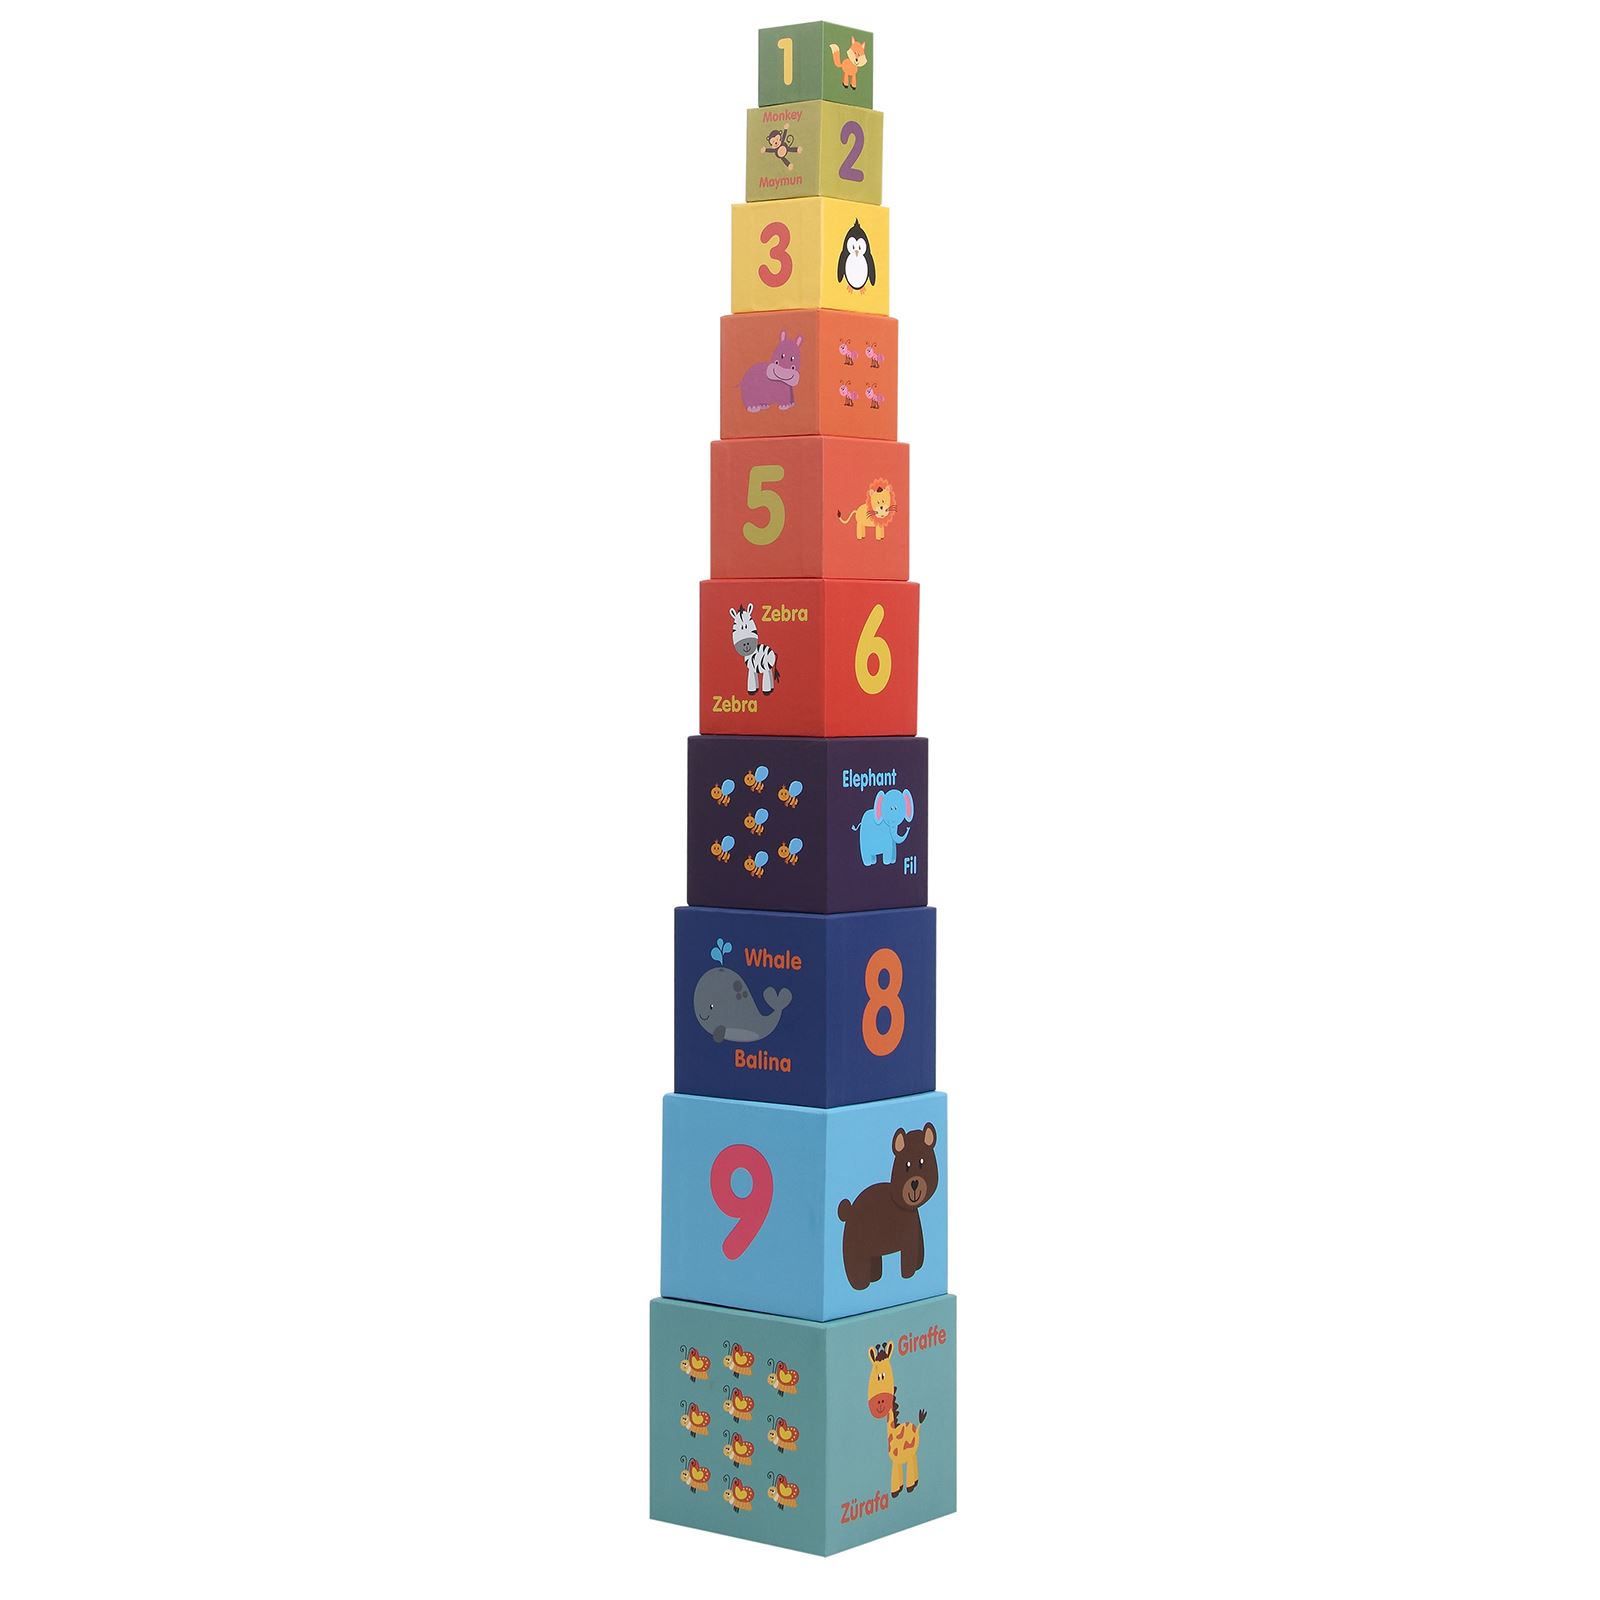 Rossie Kule Oyunu 10'lu İçiçe Eğitici Küpler 95 cm